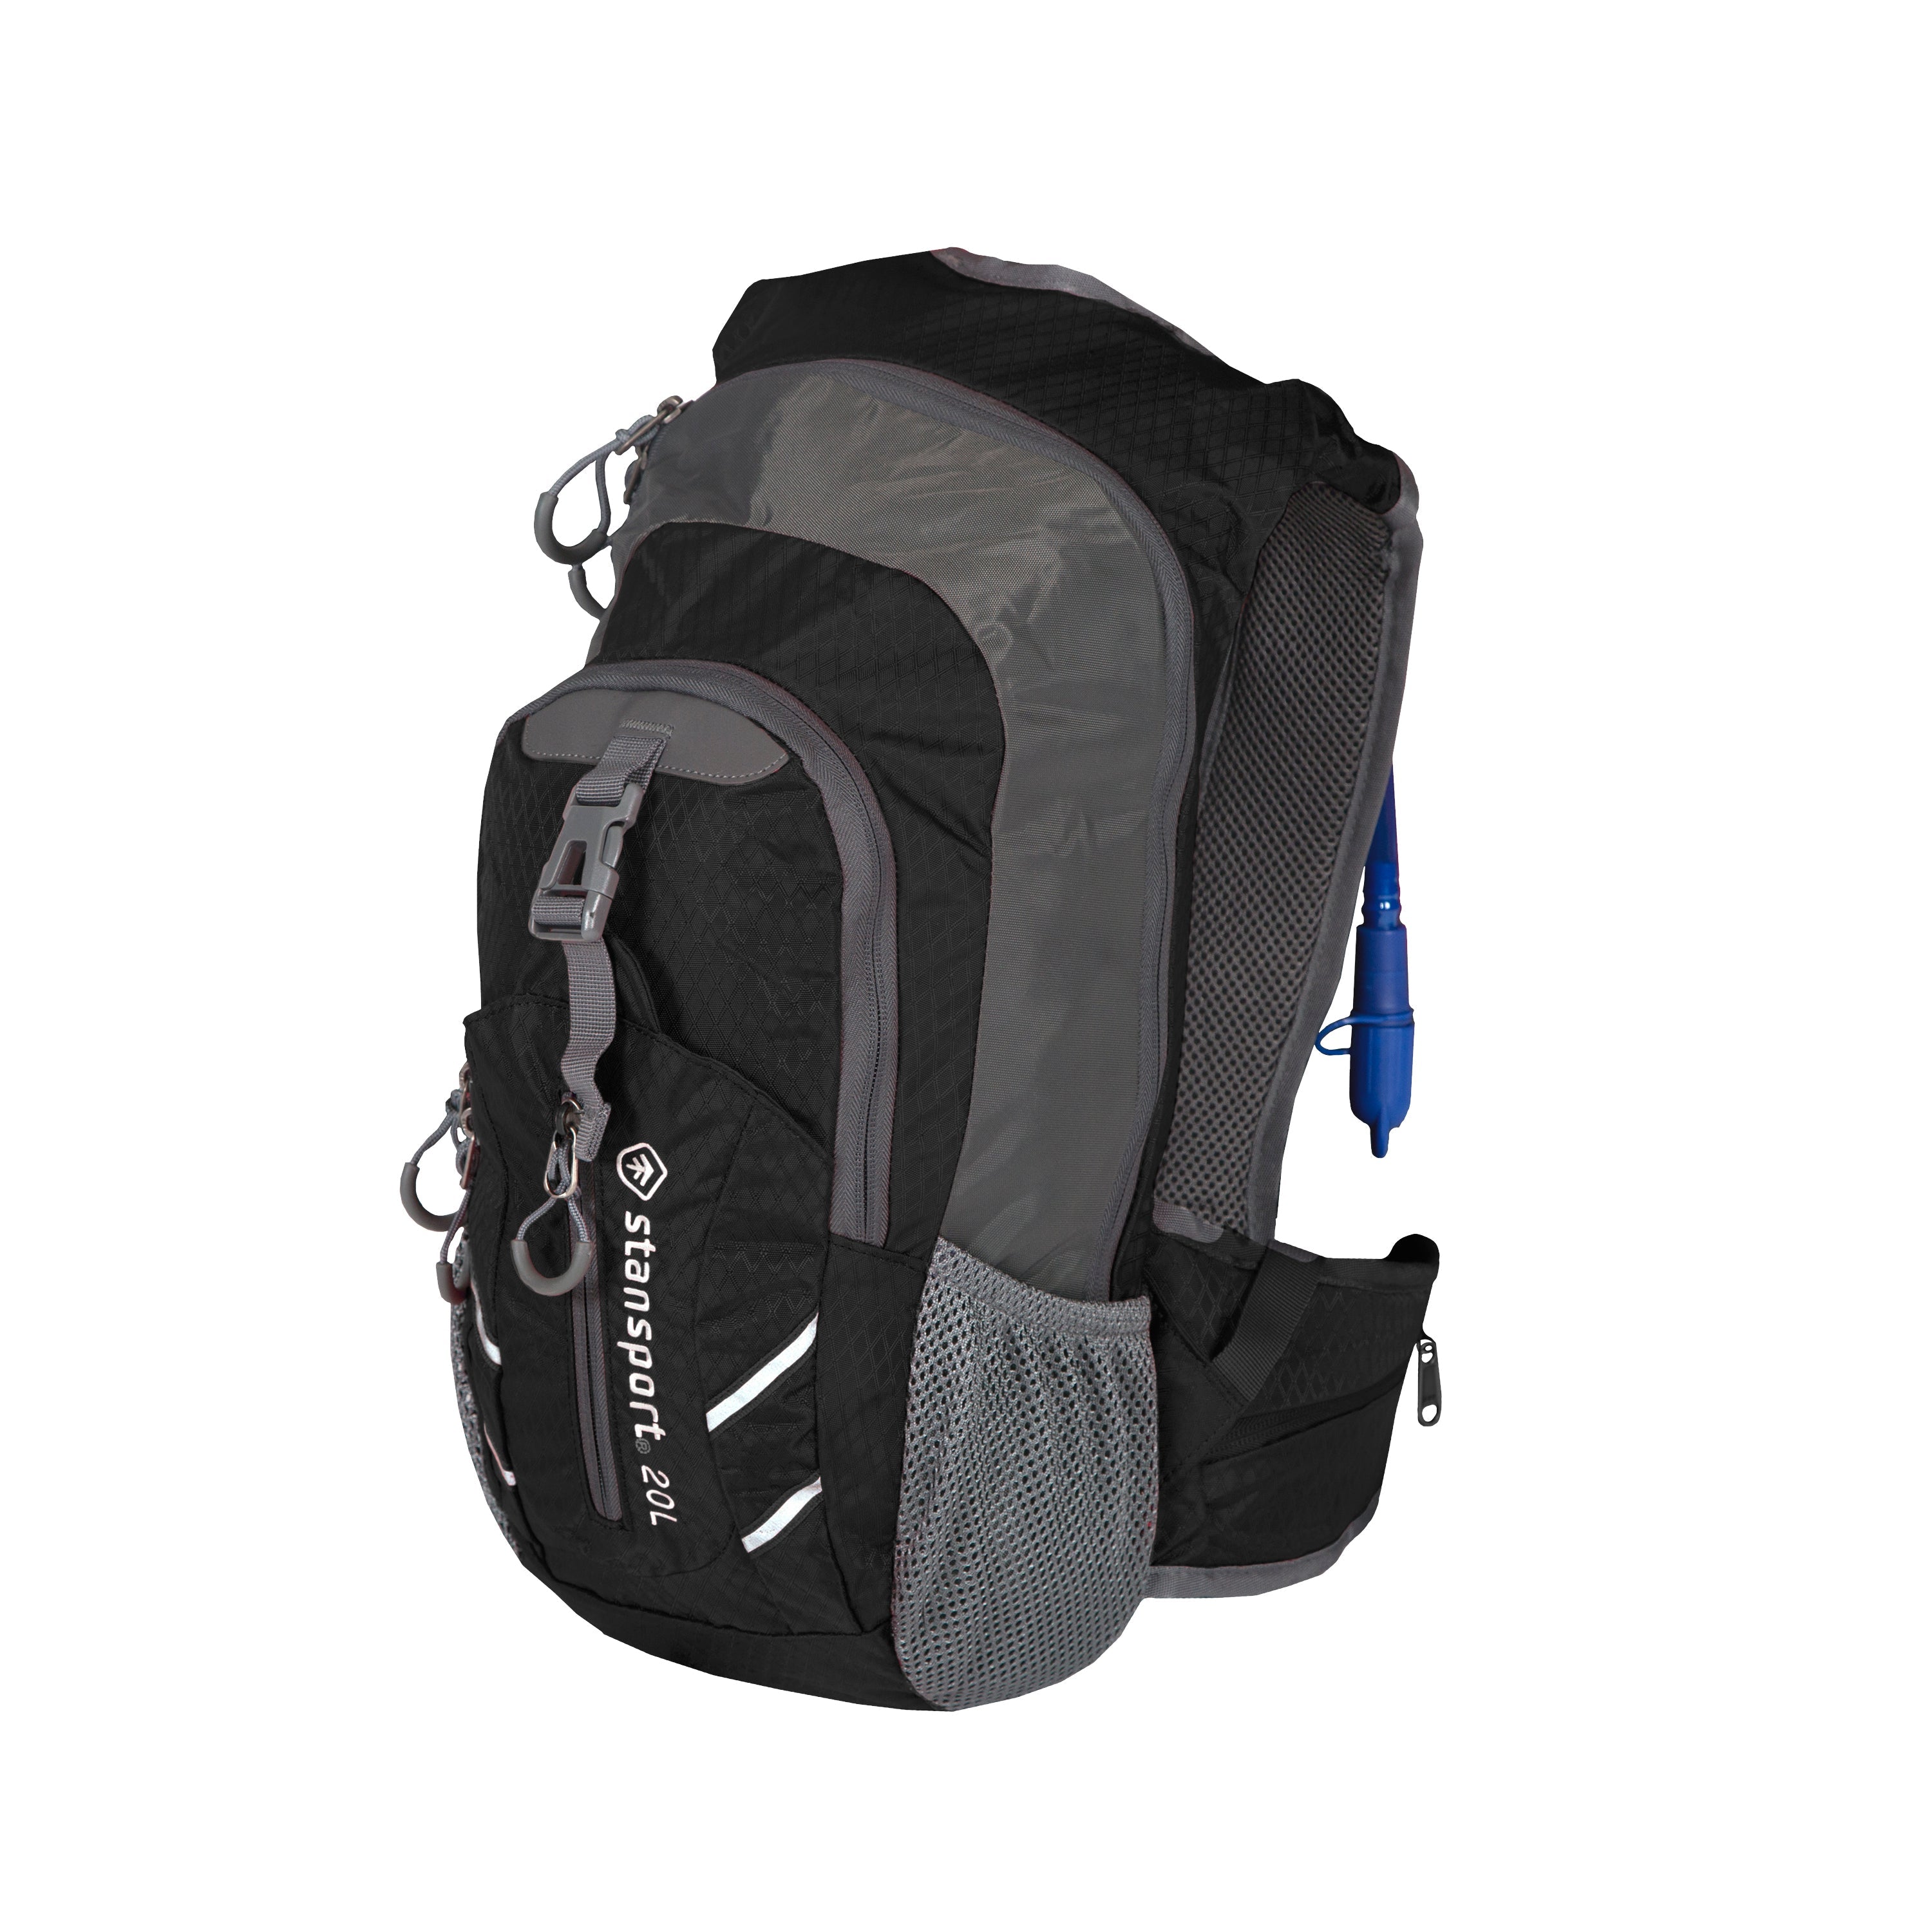 Daypack With Water Bladder - 20 Liter - Black